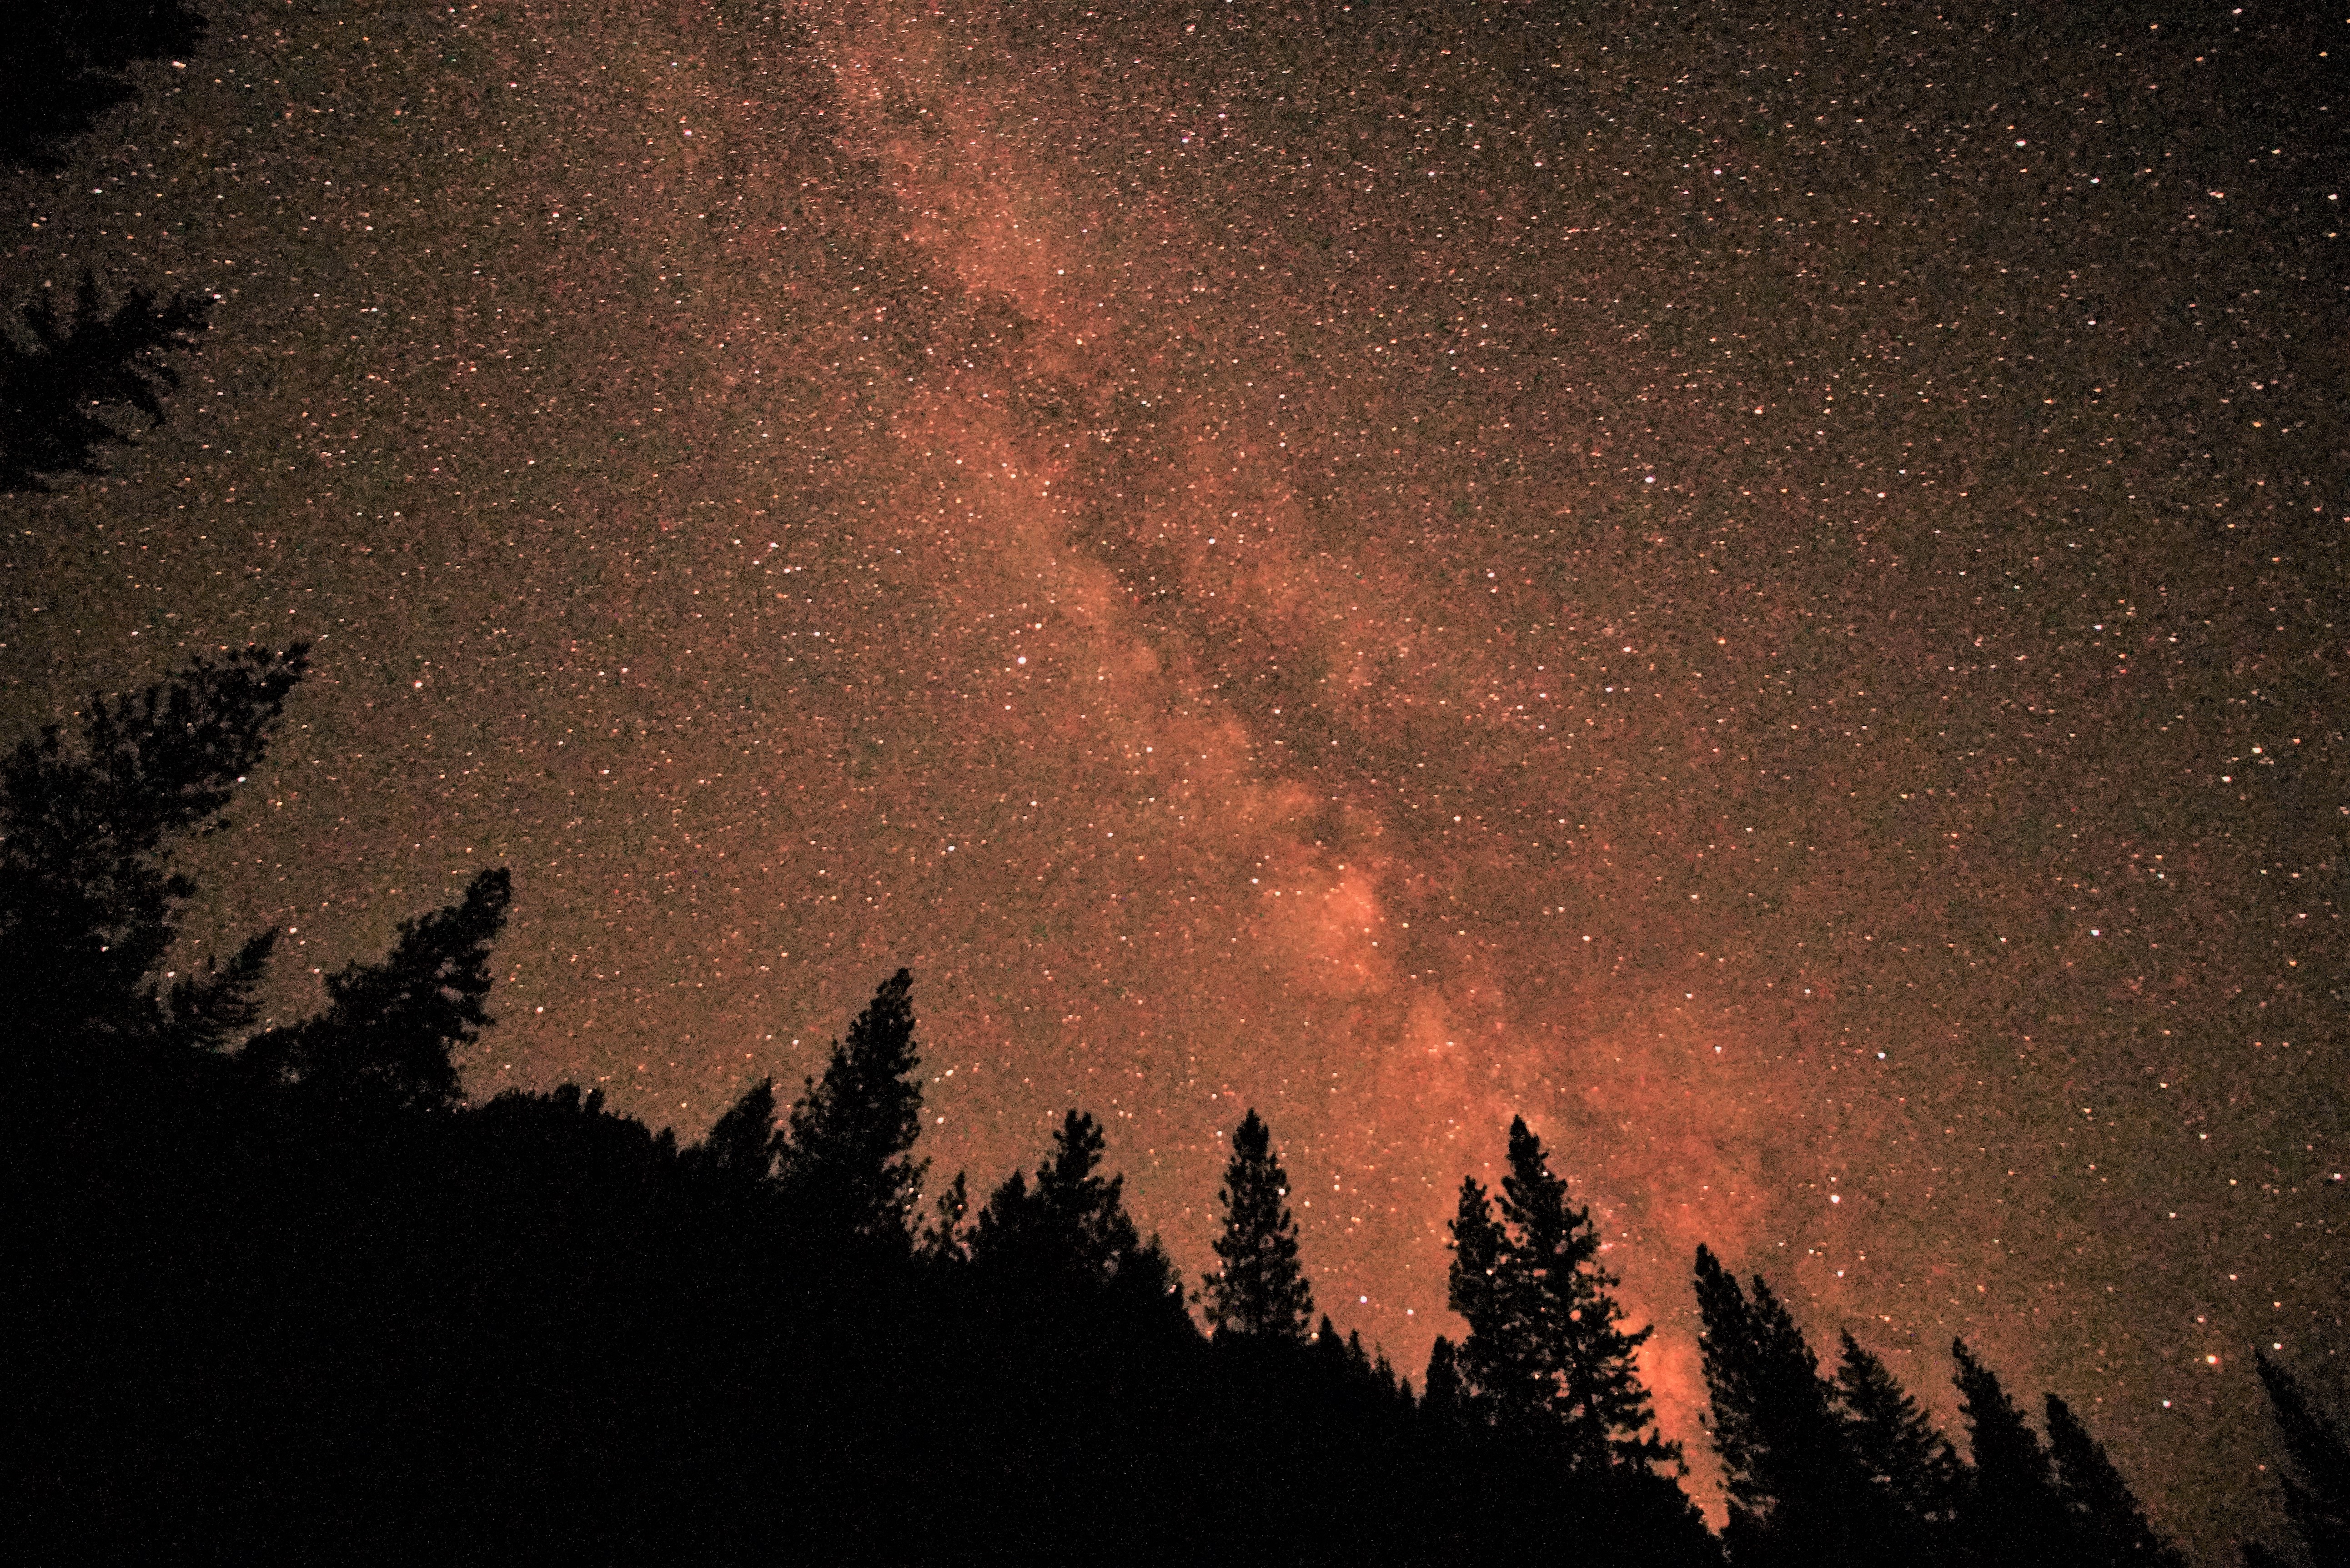 Trinity Alps Night Sky and Milky Way